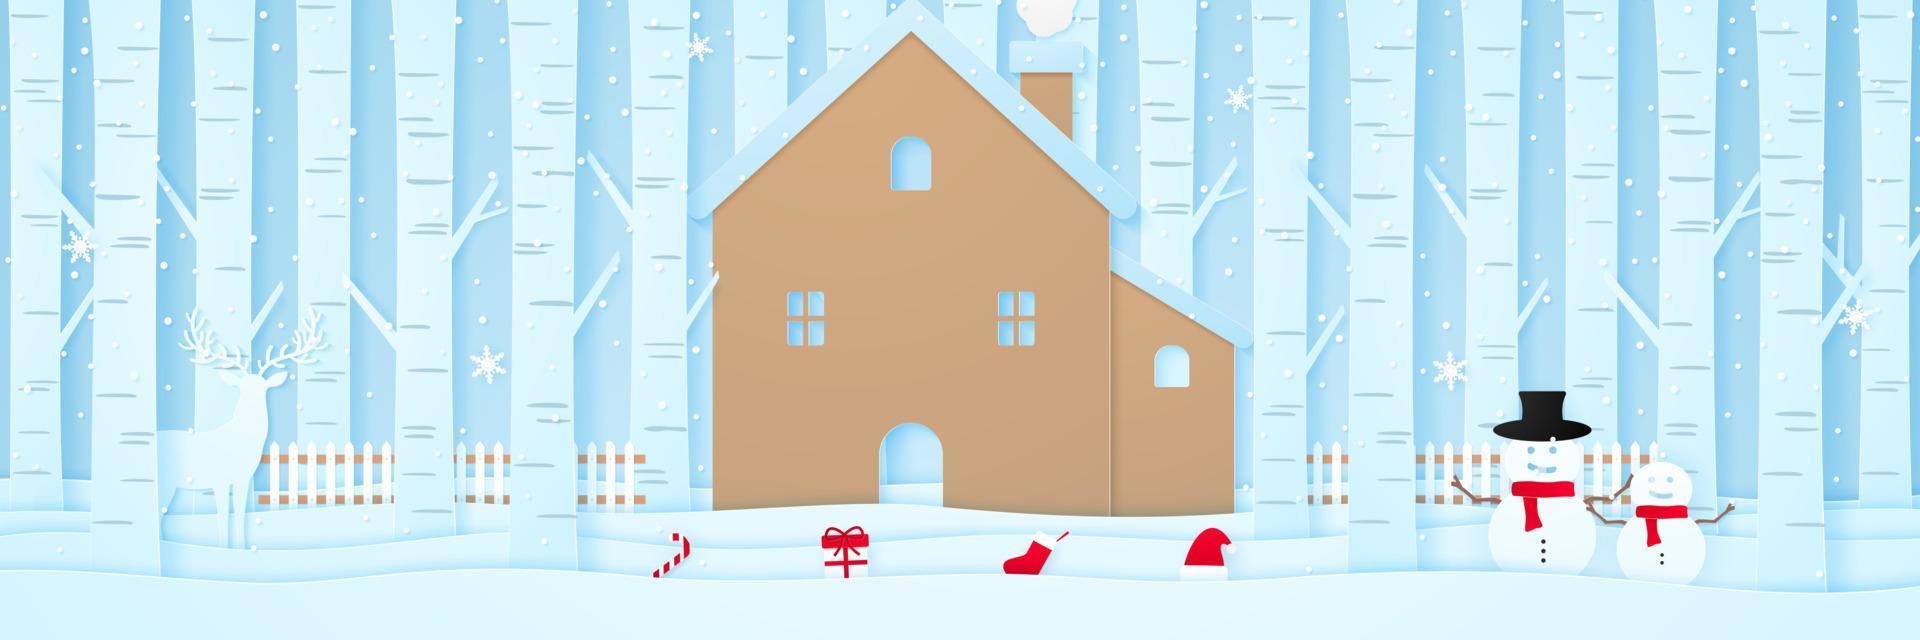 god jul, hus med renar, snögubbe, julprylar, staket och tallar på snö i vinterlandskap med snöfall, papper konststil vektor